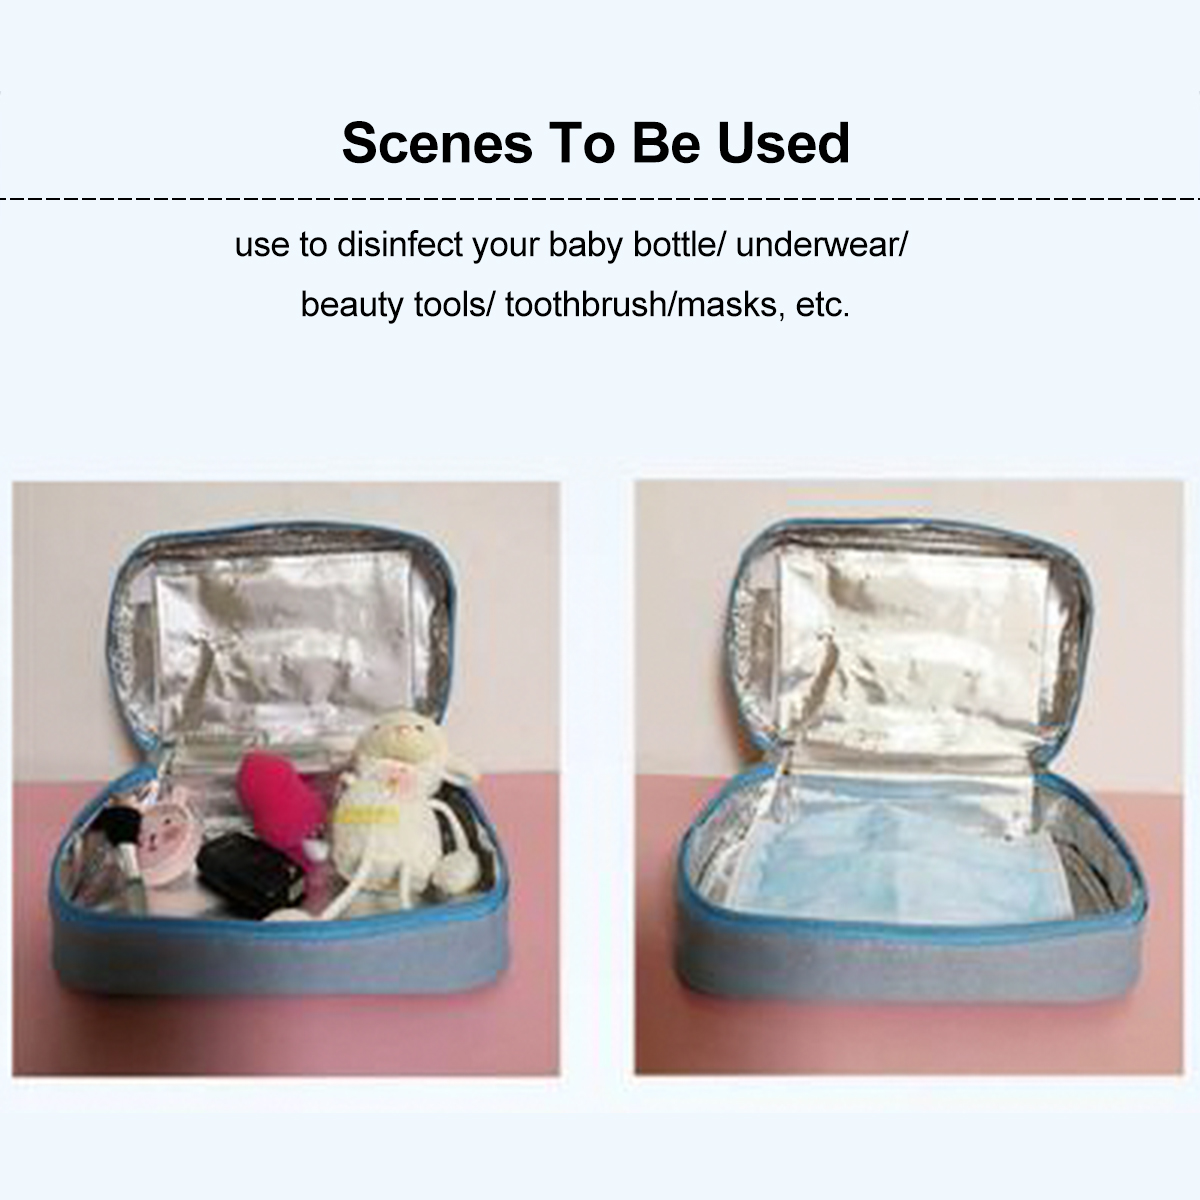 UV-Disinfection-Pack-Baby-Bottle-UnderwearMasks-Supplies-Sterilization-Box-1668082-4